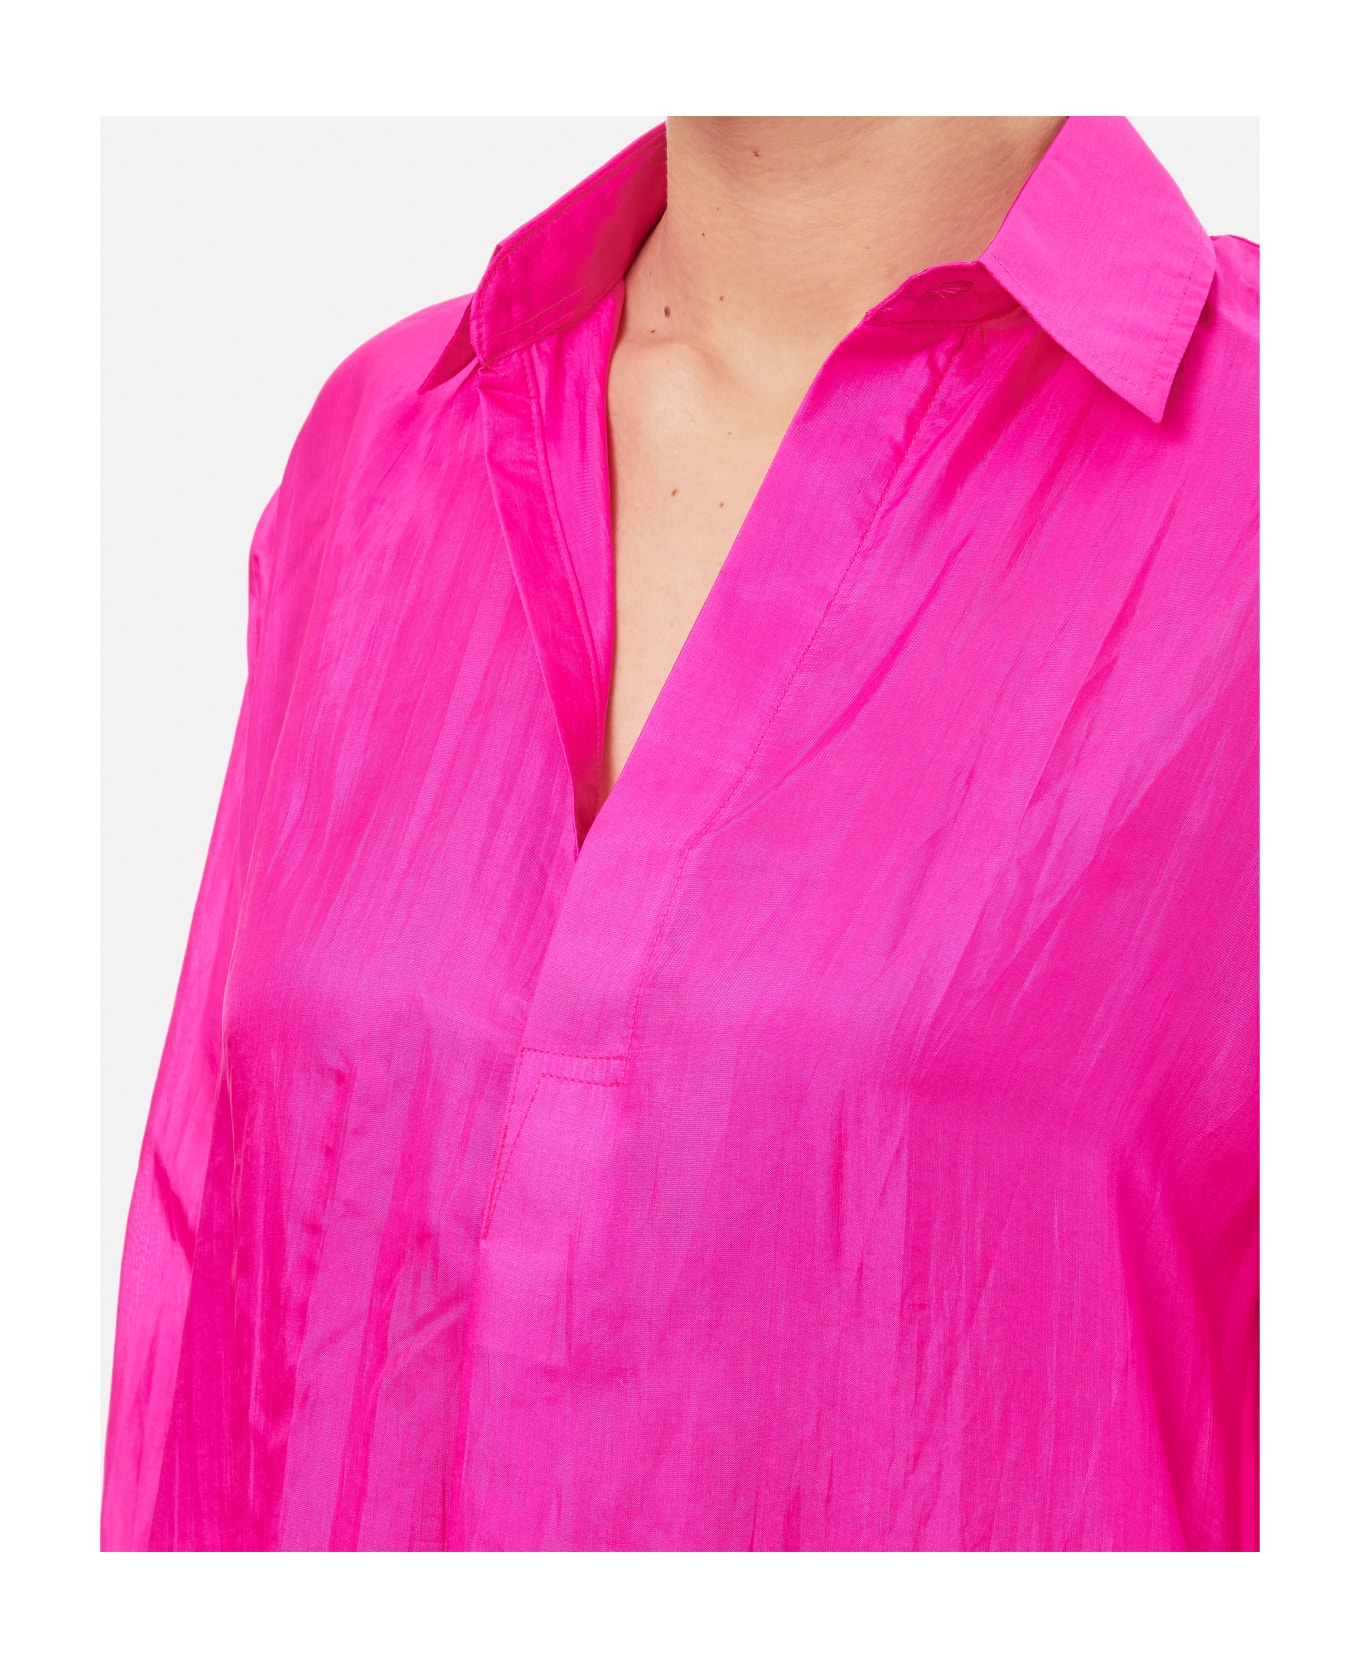 The Rose Ibiza Shirts Pink - Pink タオル